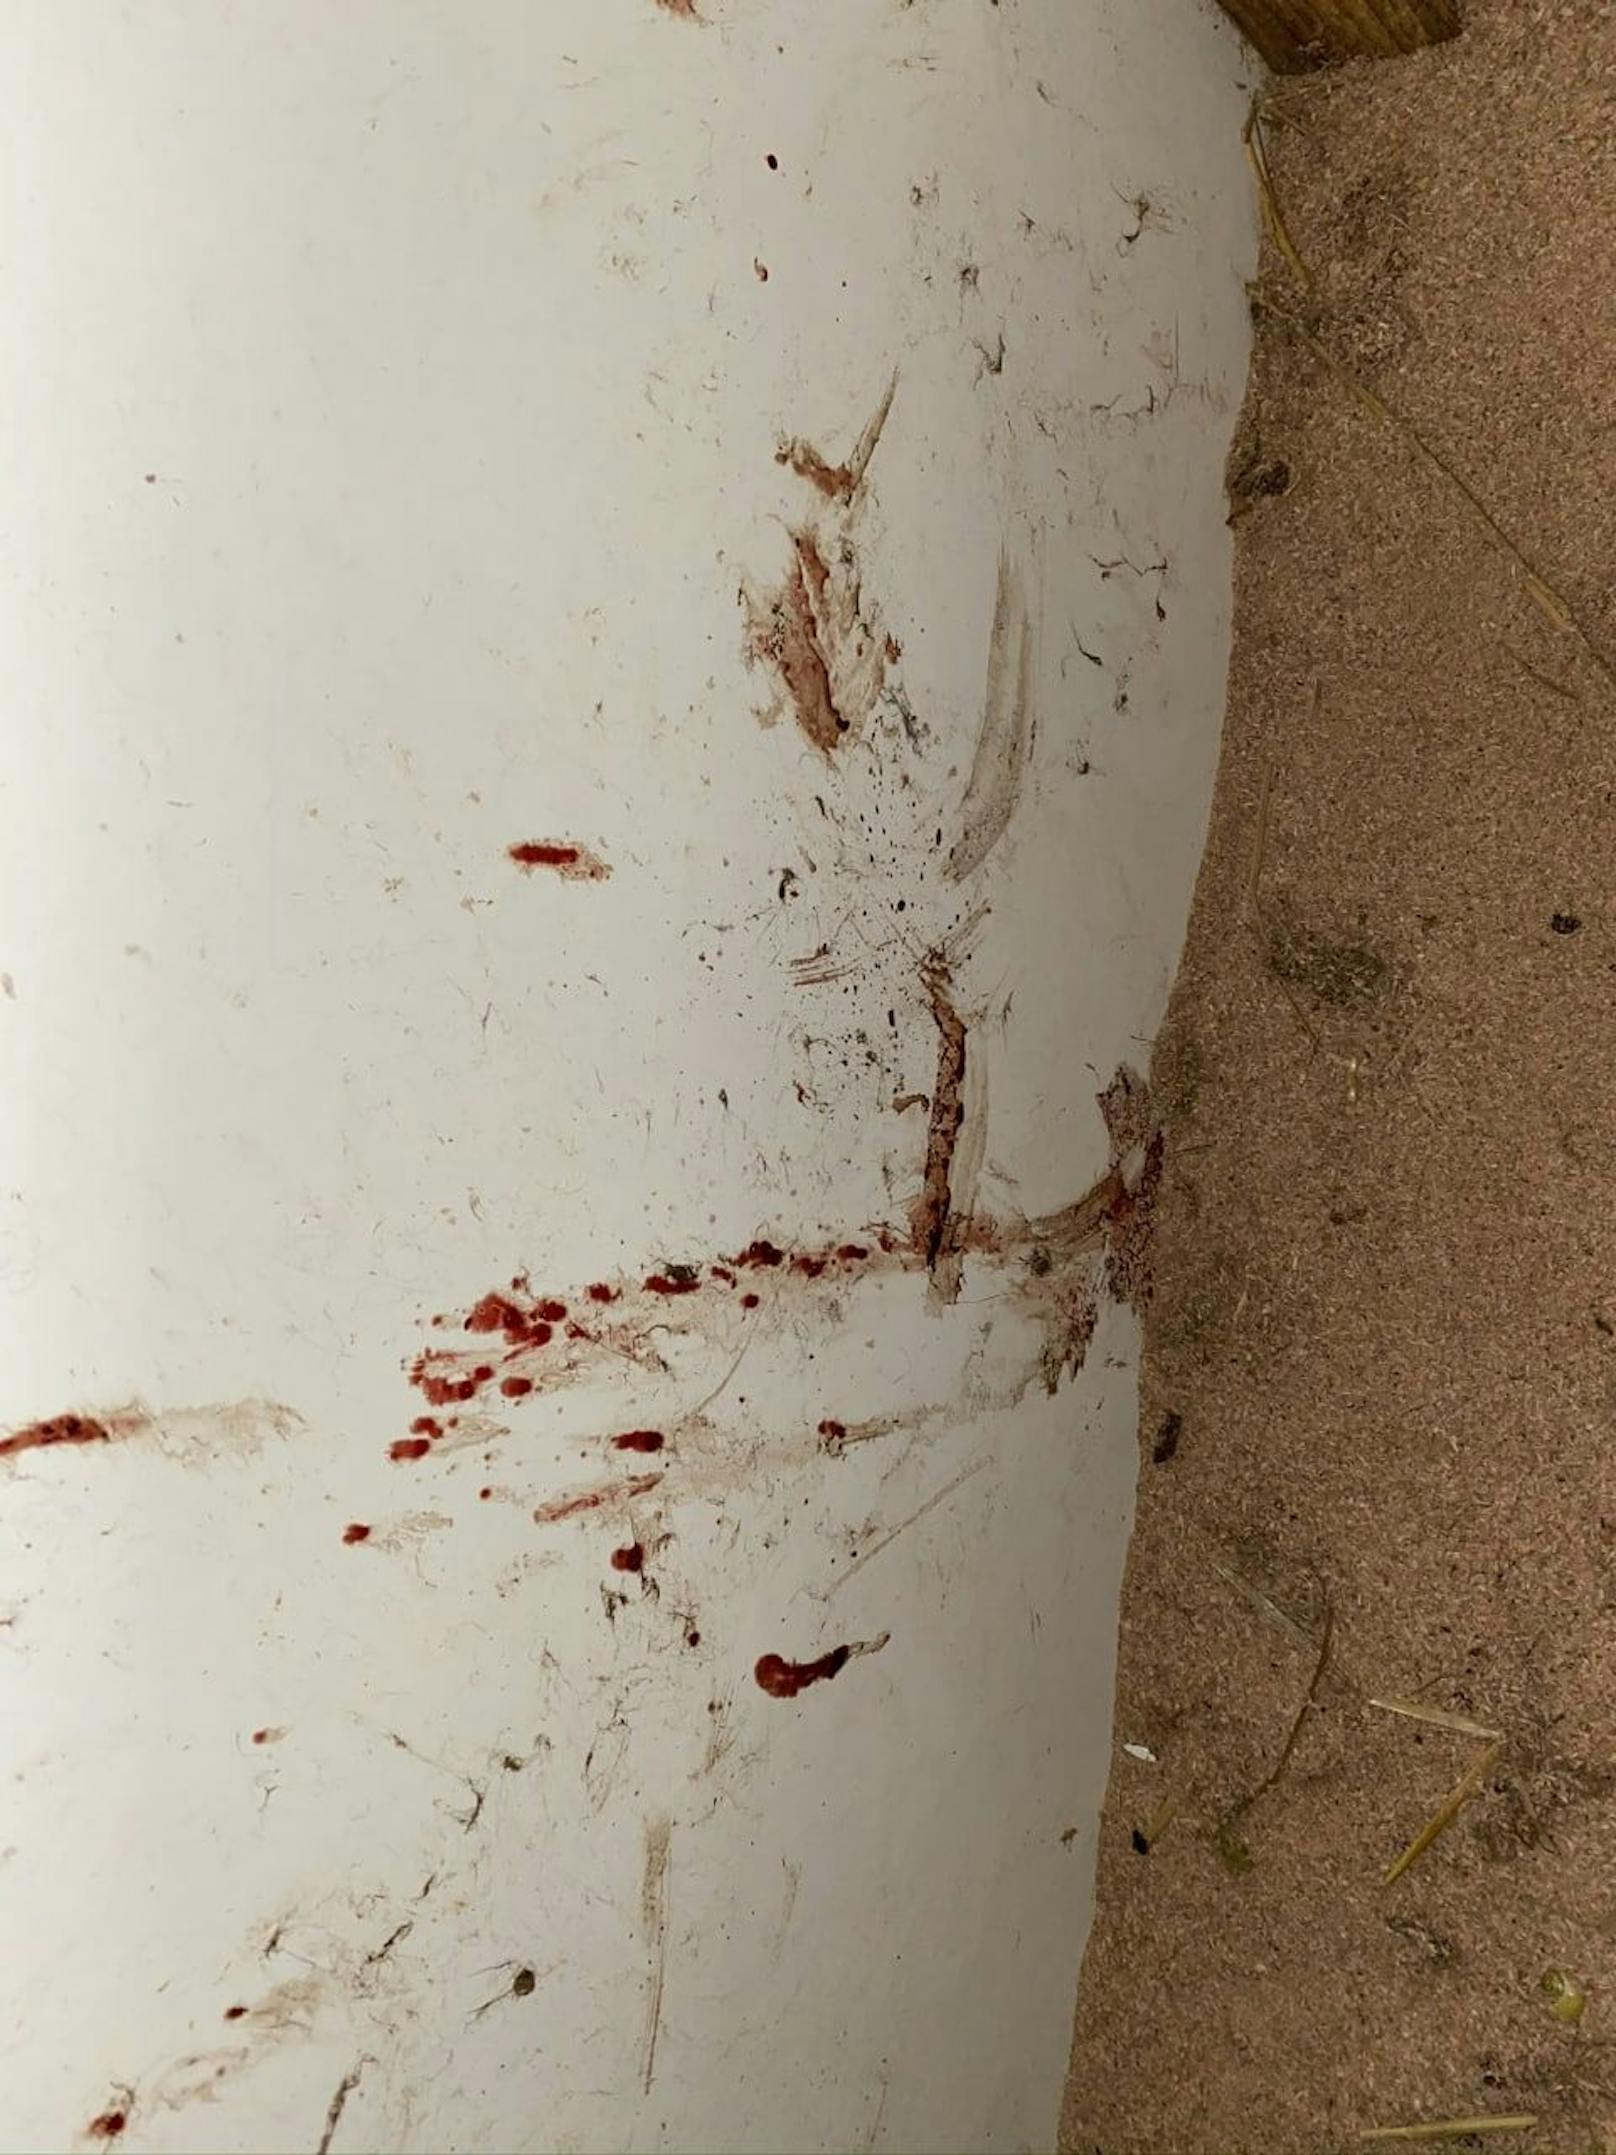 Blutspritzer von den erschlagenen Tieren.